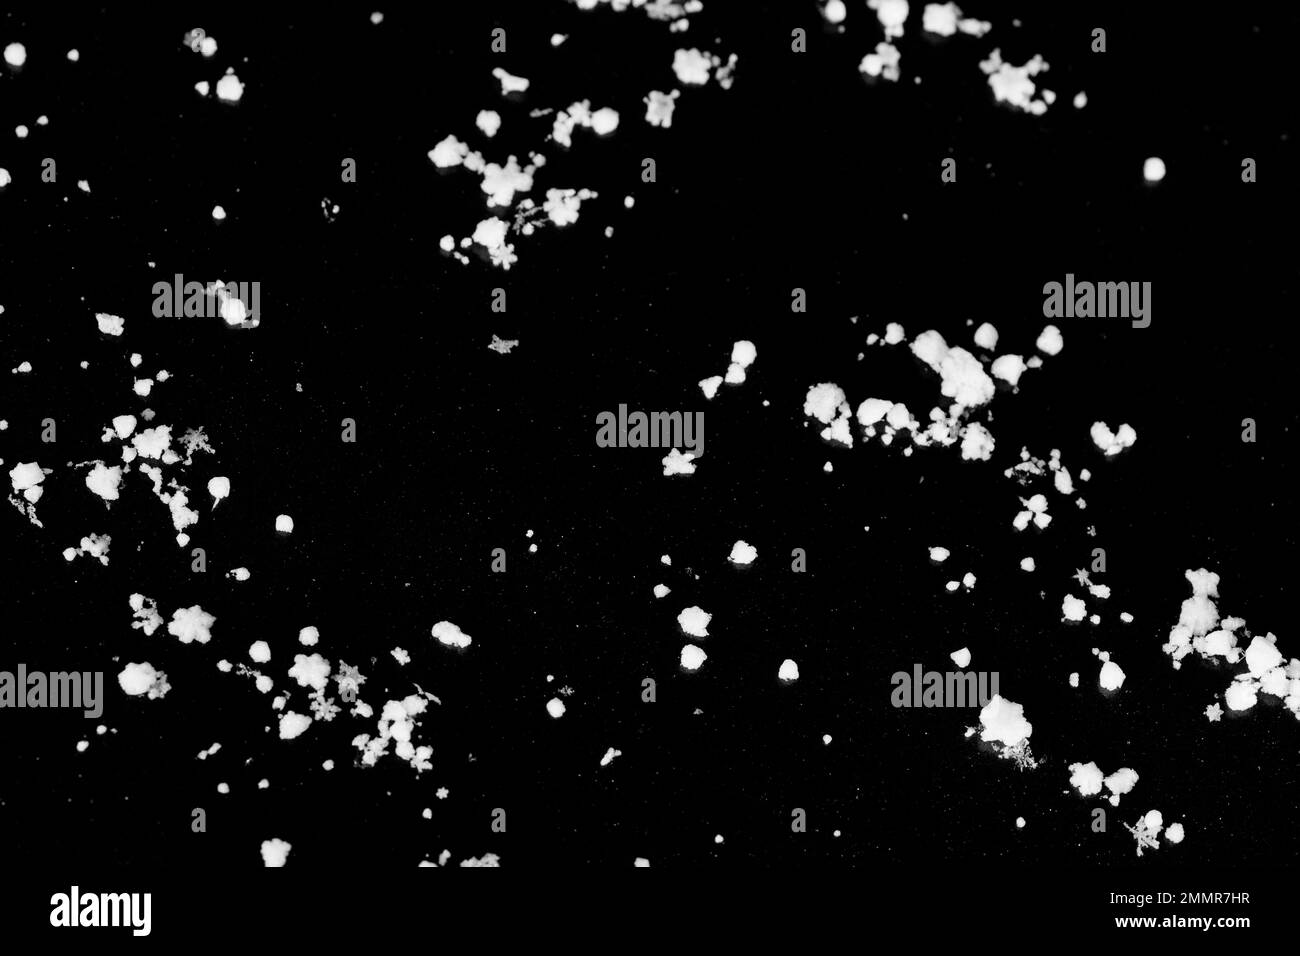 Molti fiocchi di neve su uno sfondo nero, l'immagine di sfondo assomiglia a un cielo stellato scuro. Foto Stock